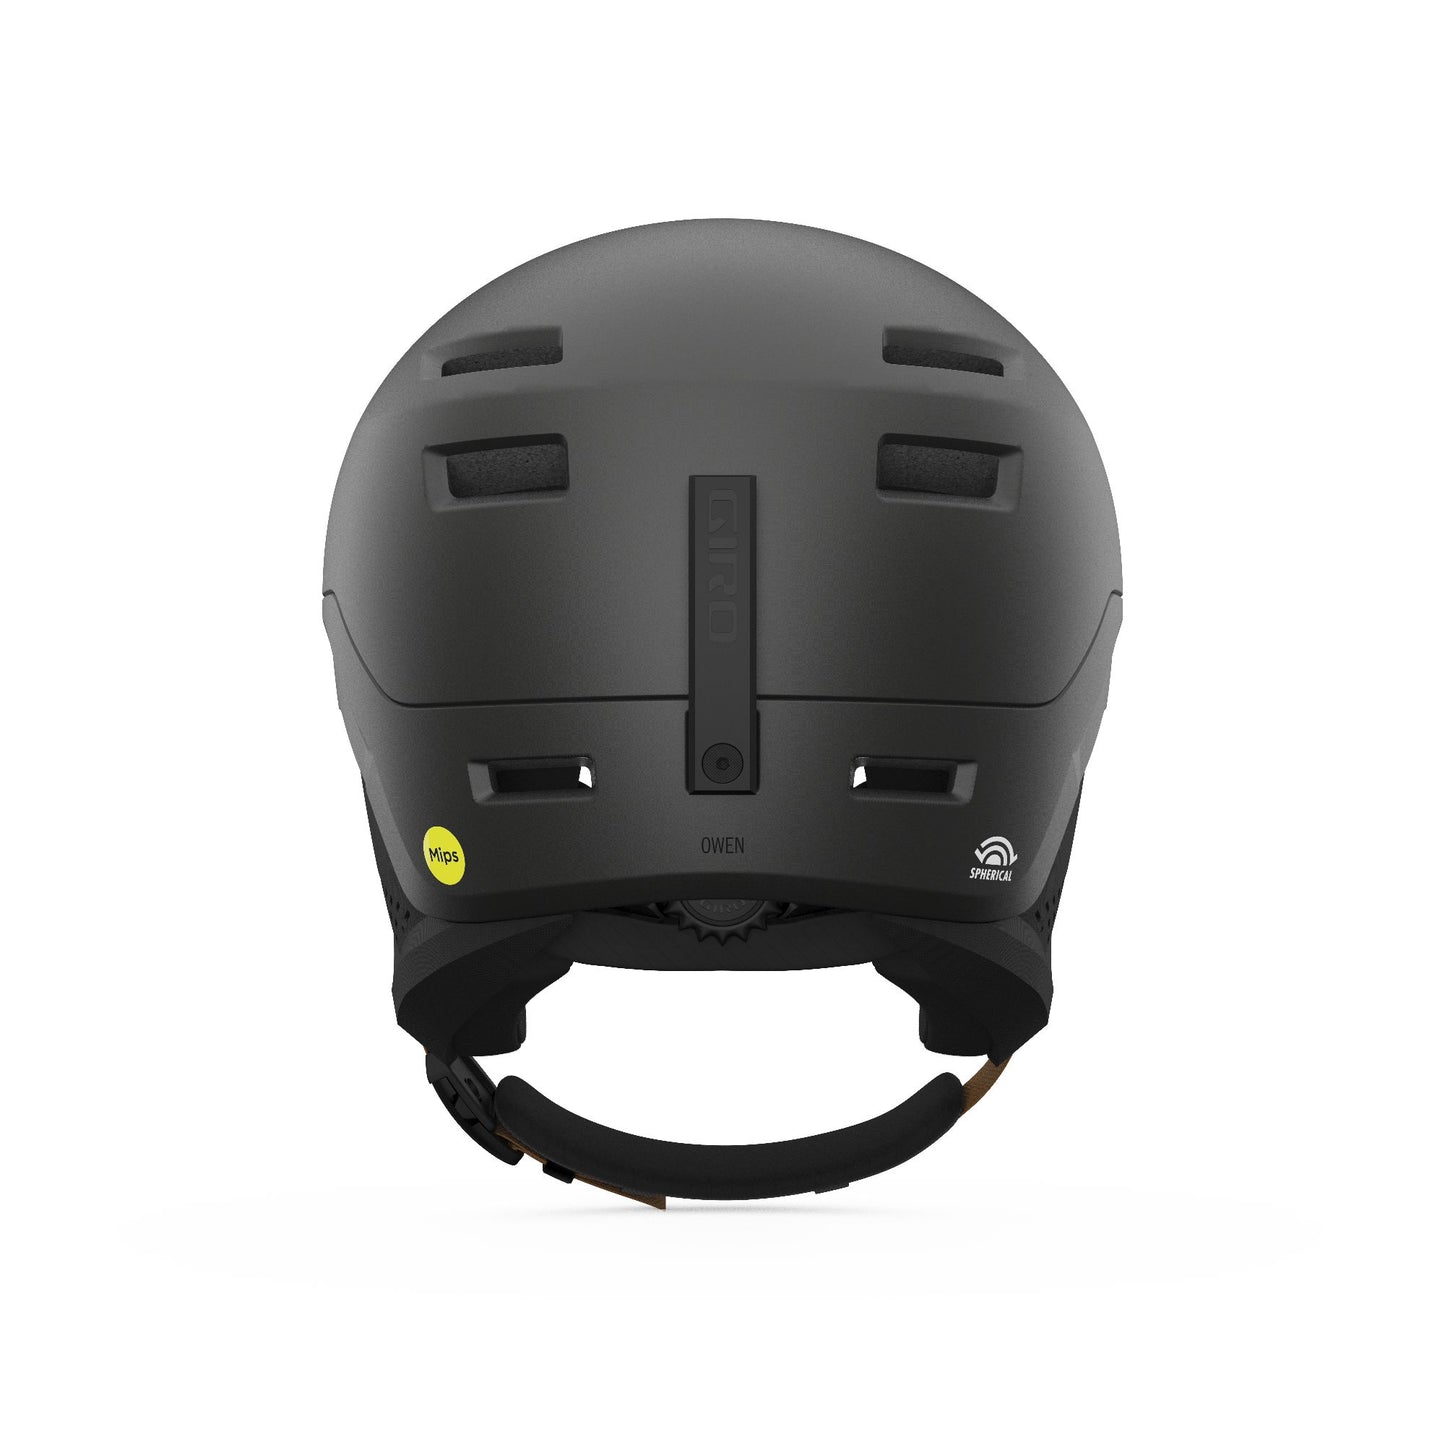 Giro Owen Spherical Helmet Metallic Coal Tan Snow Helmets